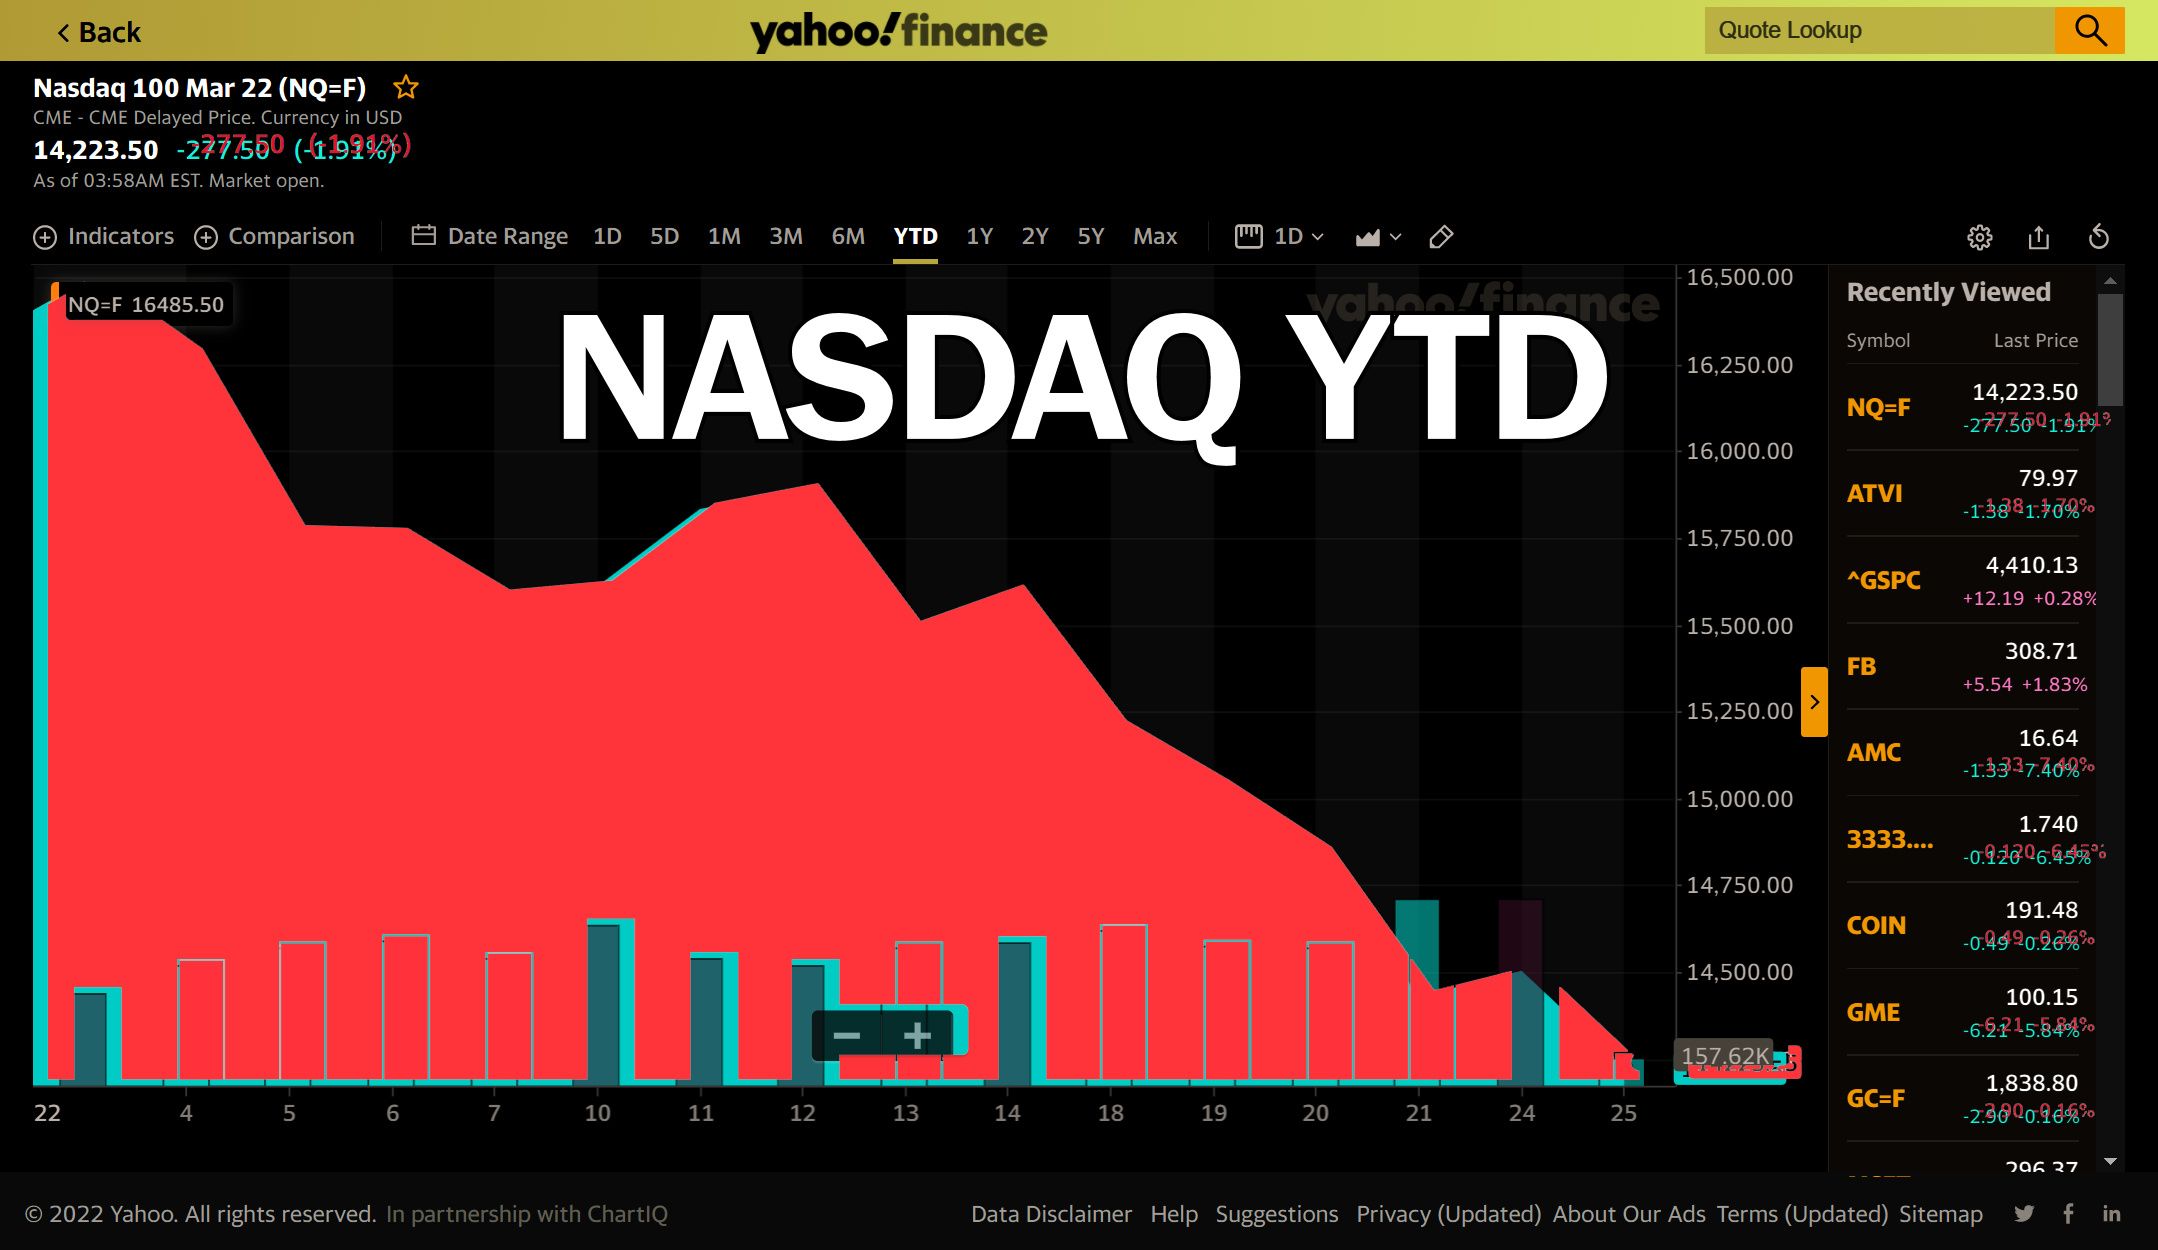 @vikisecrets/why-crypto-is-crashing-bitcoin-vs-stocks